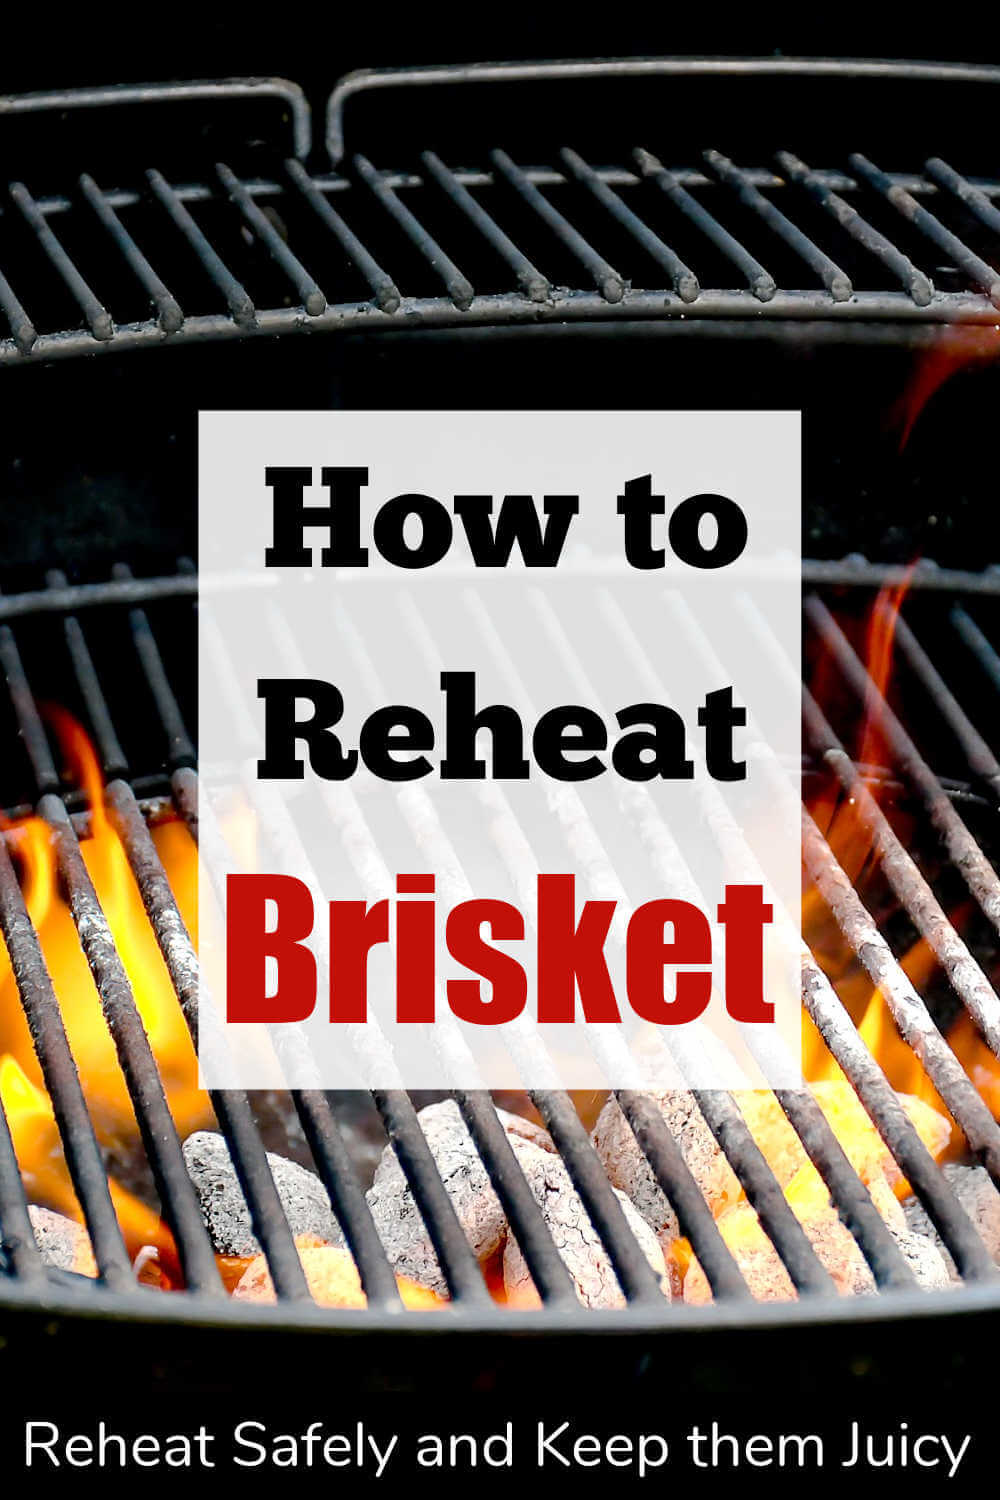 How to Reheat Brisket